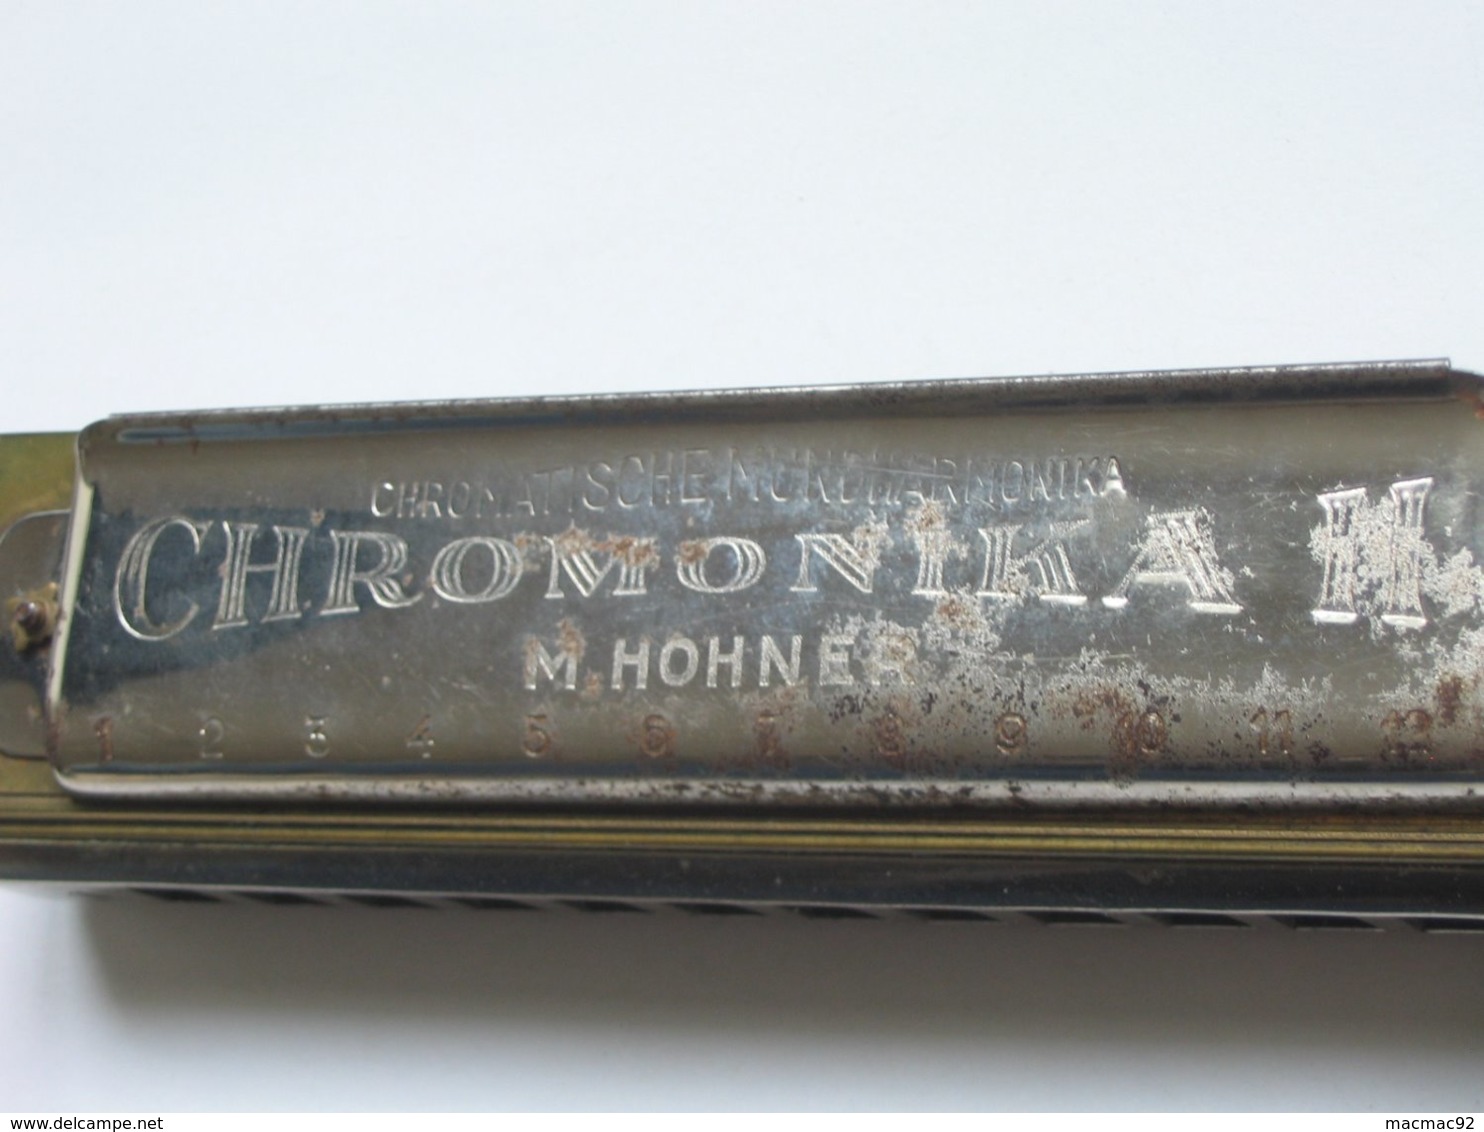 Superbe et Ancien HARMONICA - CHROMONIKA II M.HOHNER- Made in Germany  ***** EN ACHAT IMMEDIAT ****